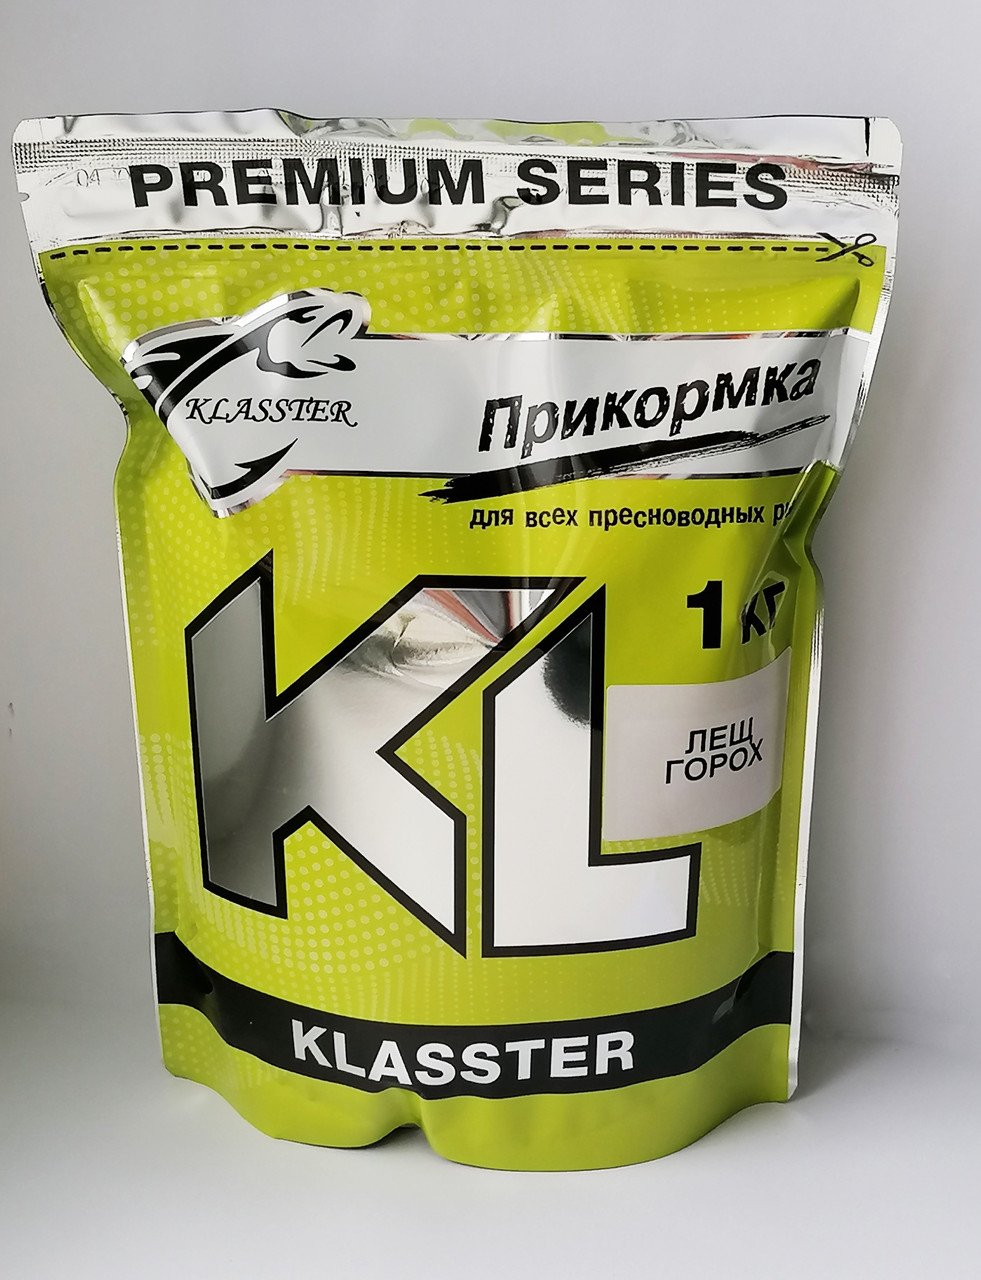 Прикормка Klasster Premium Лящ Горох 1 кг